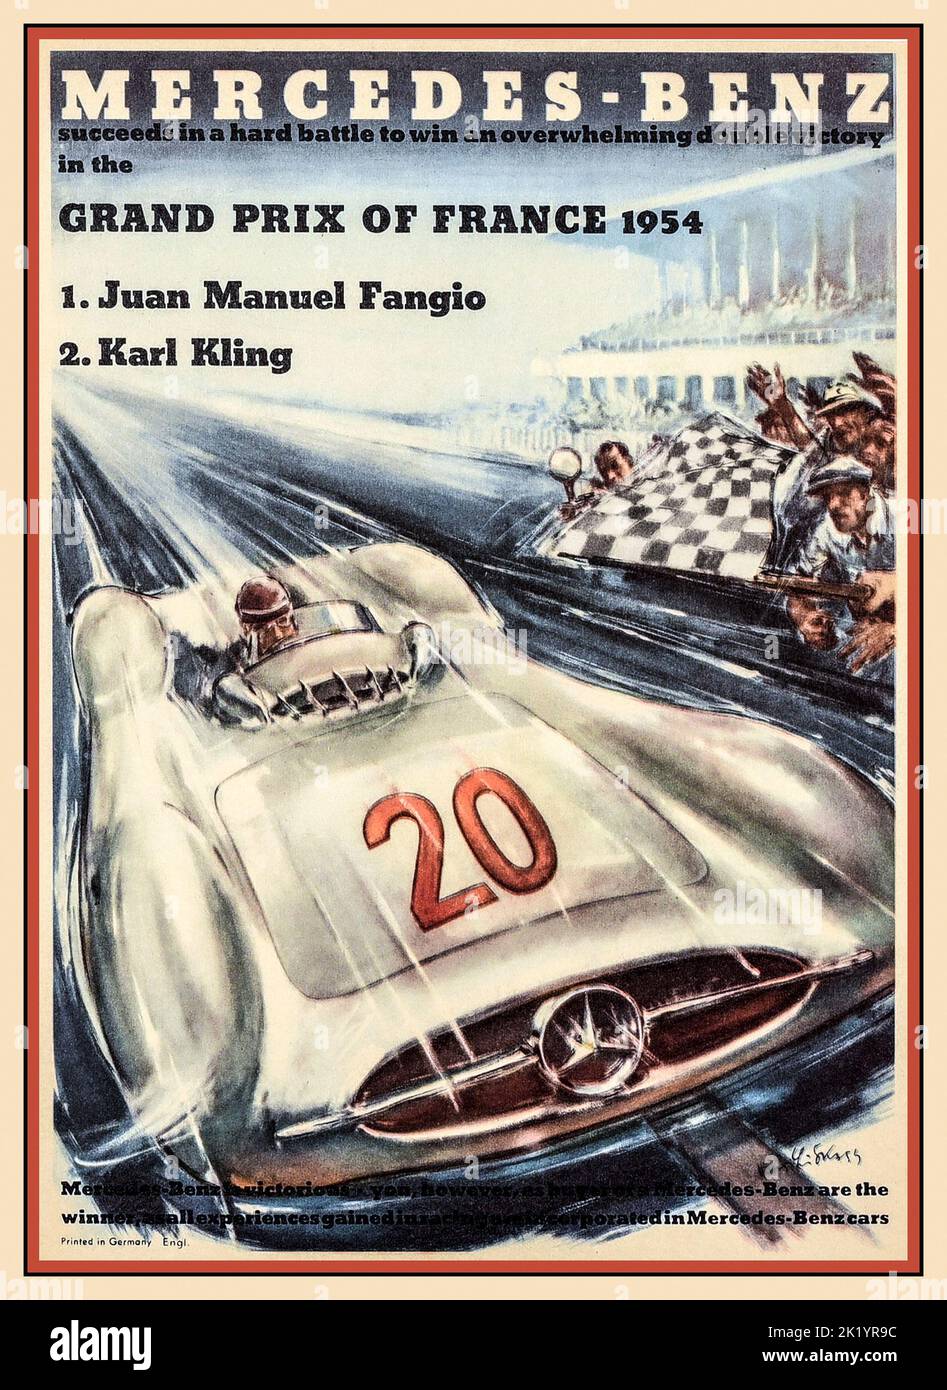 Mercedes-Benz Grand Prix von Frankreich 1954 Poster. Sieger Juan Manuel Fangio in einem Mercedes Nr. 20 W196 war der Grand Prix von Frankreich 1954 ein Formel-1-Motorrennen, das am 4. Juli 1954 in Reims stattfand, dem gleichen Datum wie das Fußball-Weltcup-Finale 1954. Es war Rennen 4 von 9 in der Weltmeisterschaft der Fahrer 1954. Das 61-Runden-Rennen gewann Mercedes-Pilot Juan Manuel Fangio, nachdem er von der Pole-Position aus gestartet war. Zweiter Platz war Karl Kling, der ebenfalls einen Mercedes fuhr. Reims Frankreich Stockfoto